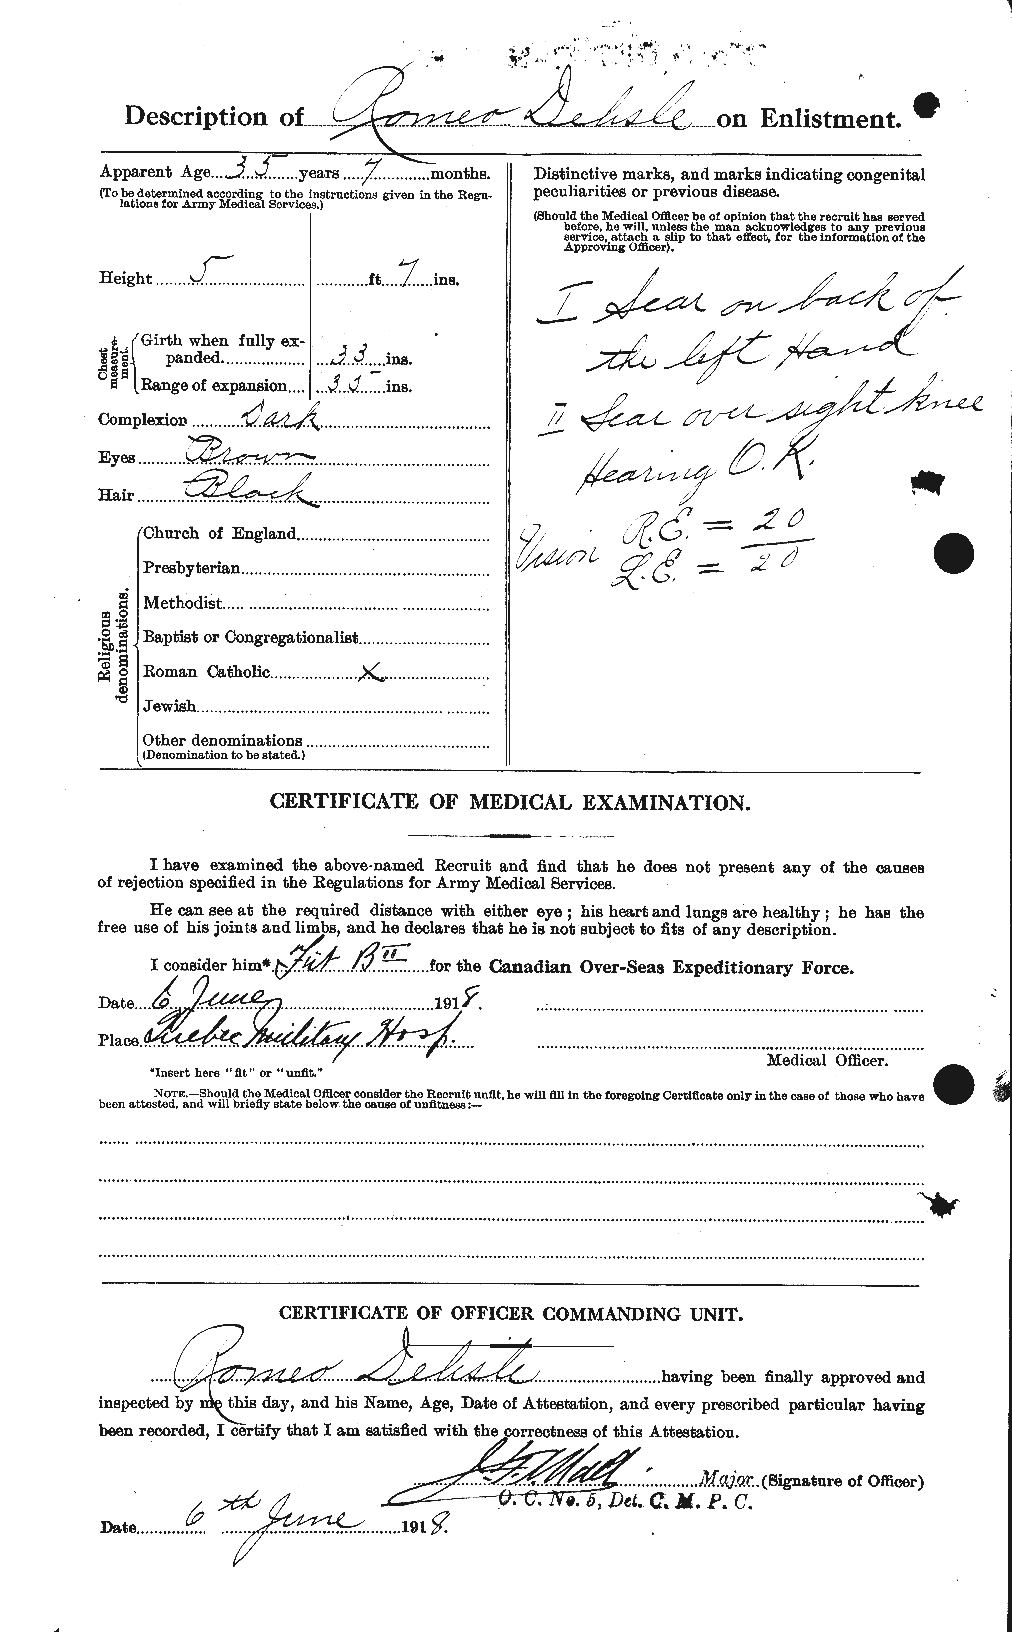 Dossiers du Personnel de la Première Guerre mondiale - CEC 286641b